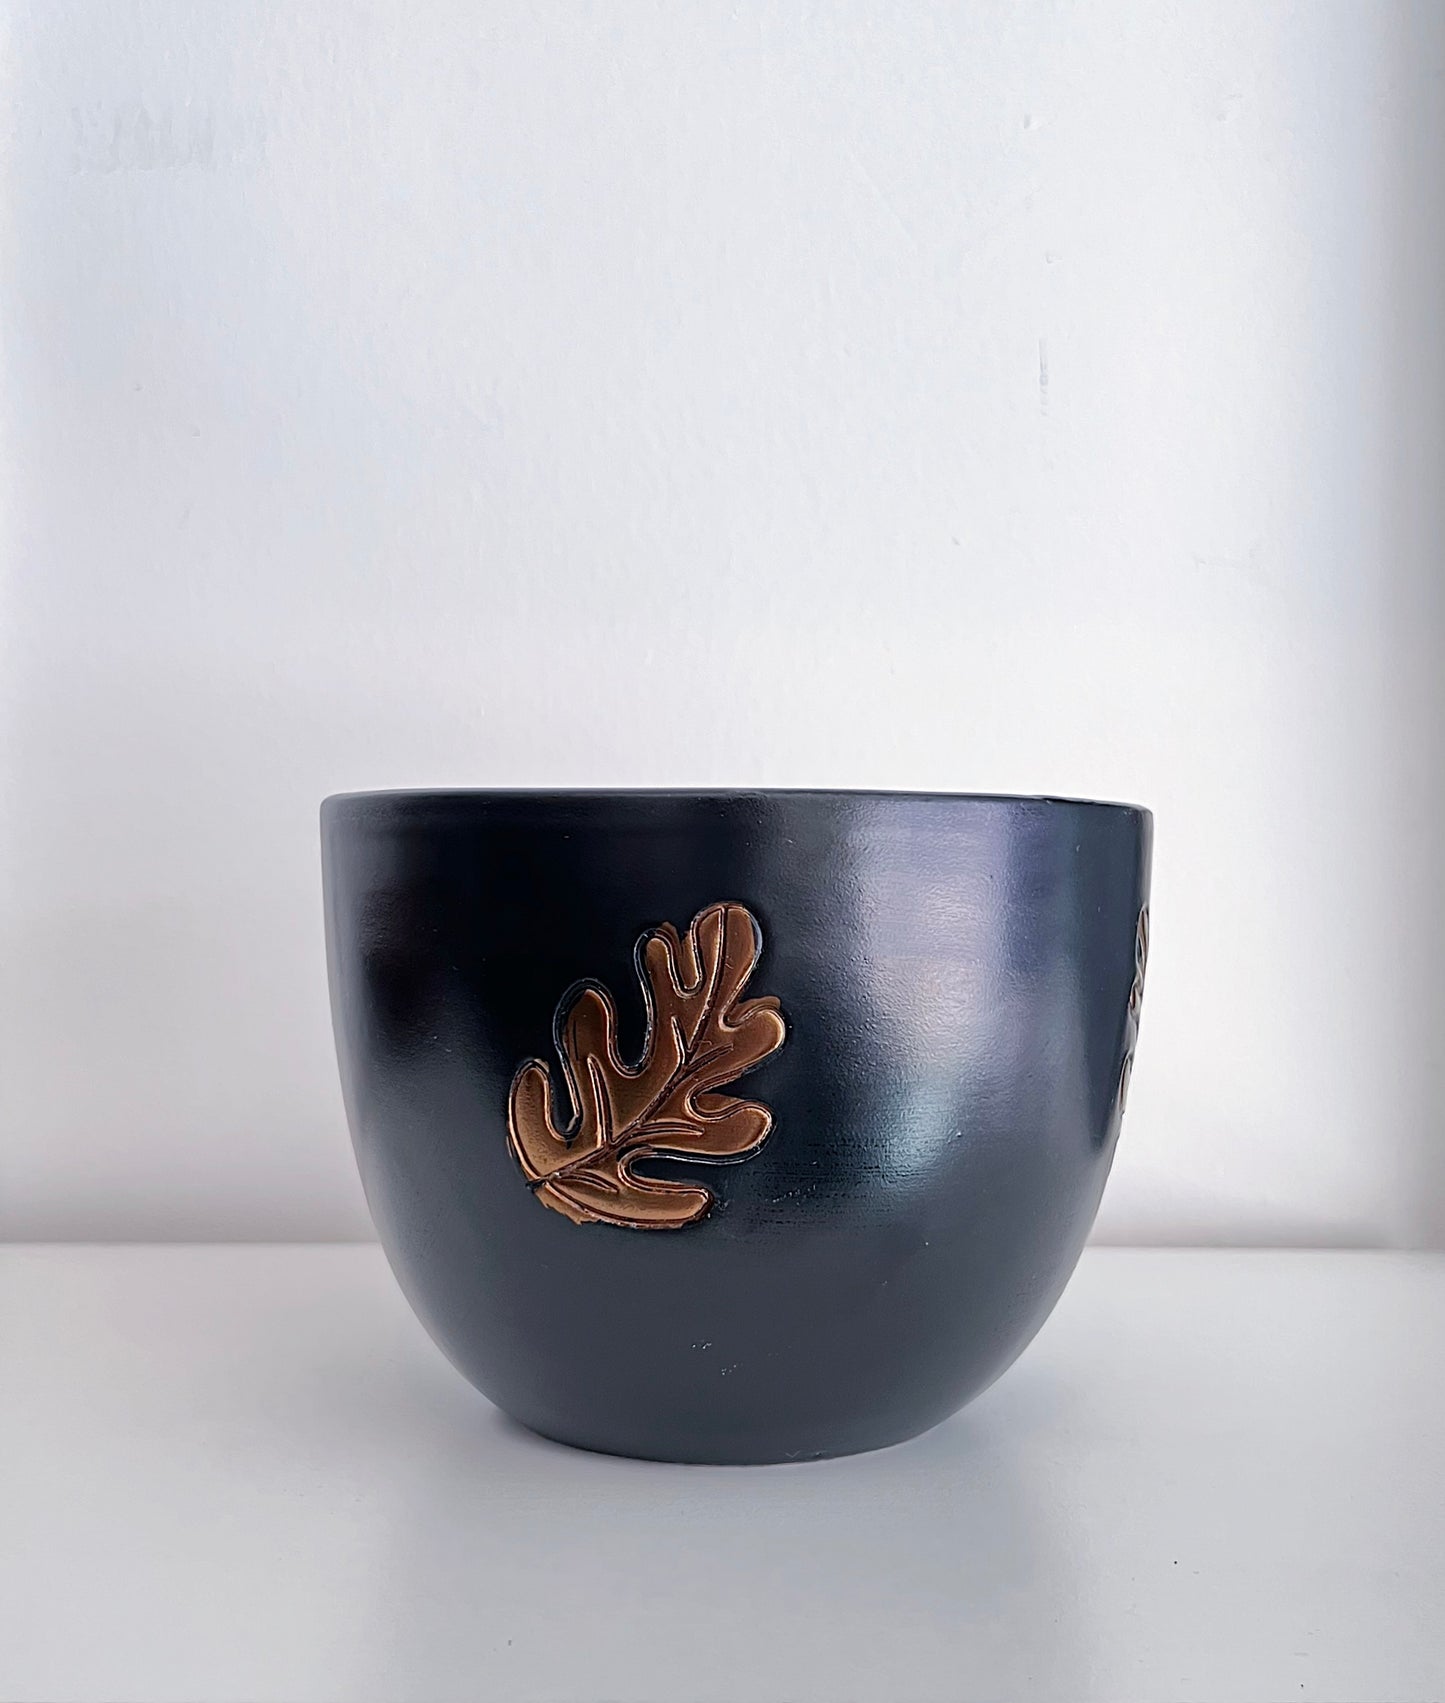 Vintage Bitossi Ceramic Bowl in Black